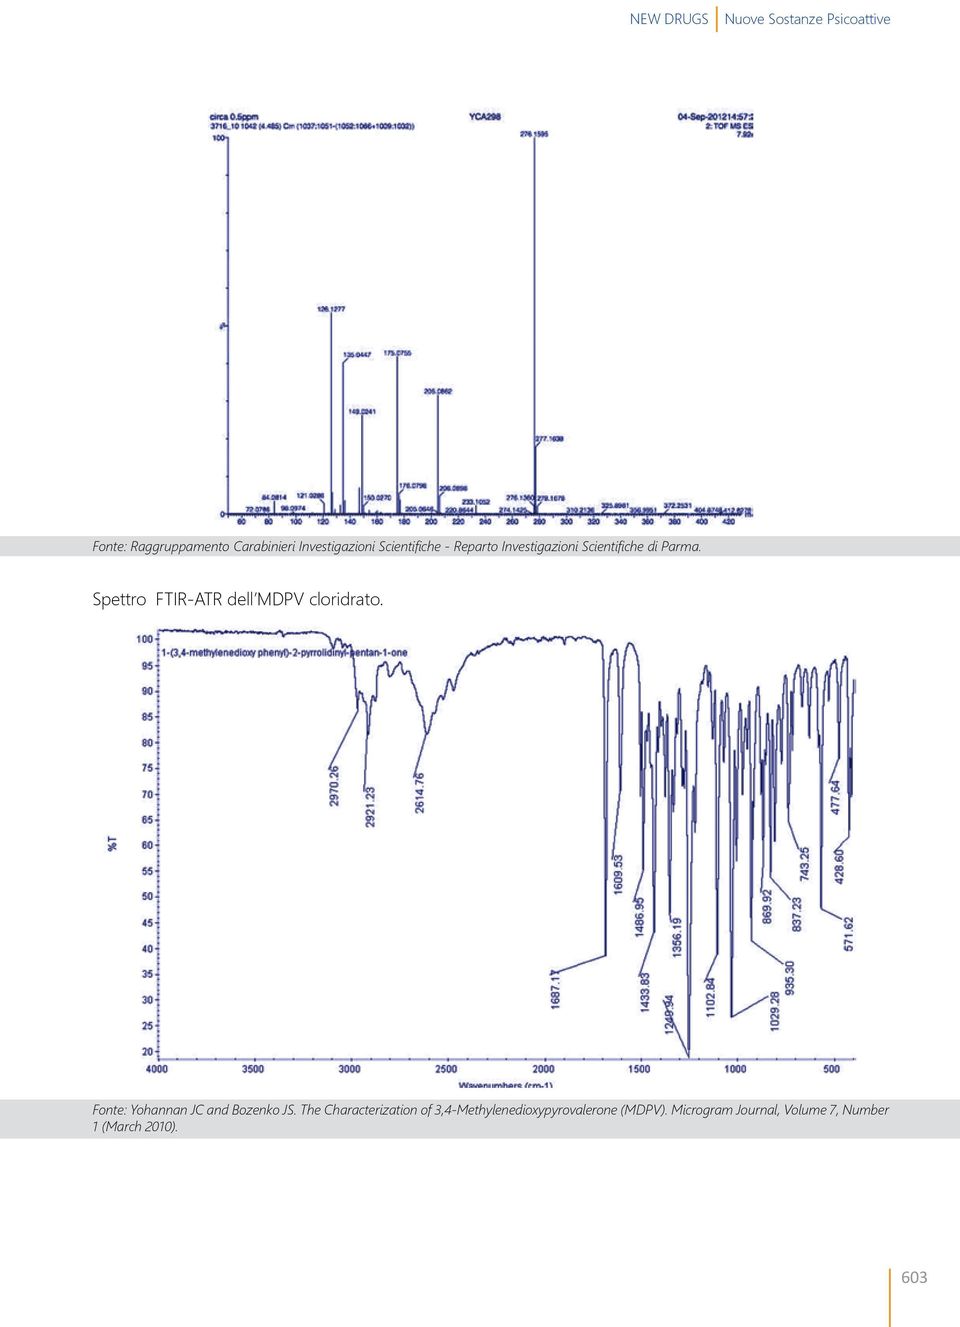 Spettro FTIR-ATR dell MDPV cloridrato. Fonte: Yohannan JC and Bozenko JS.